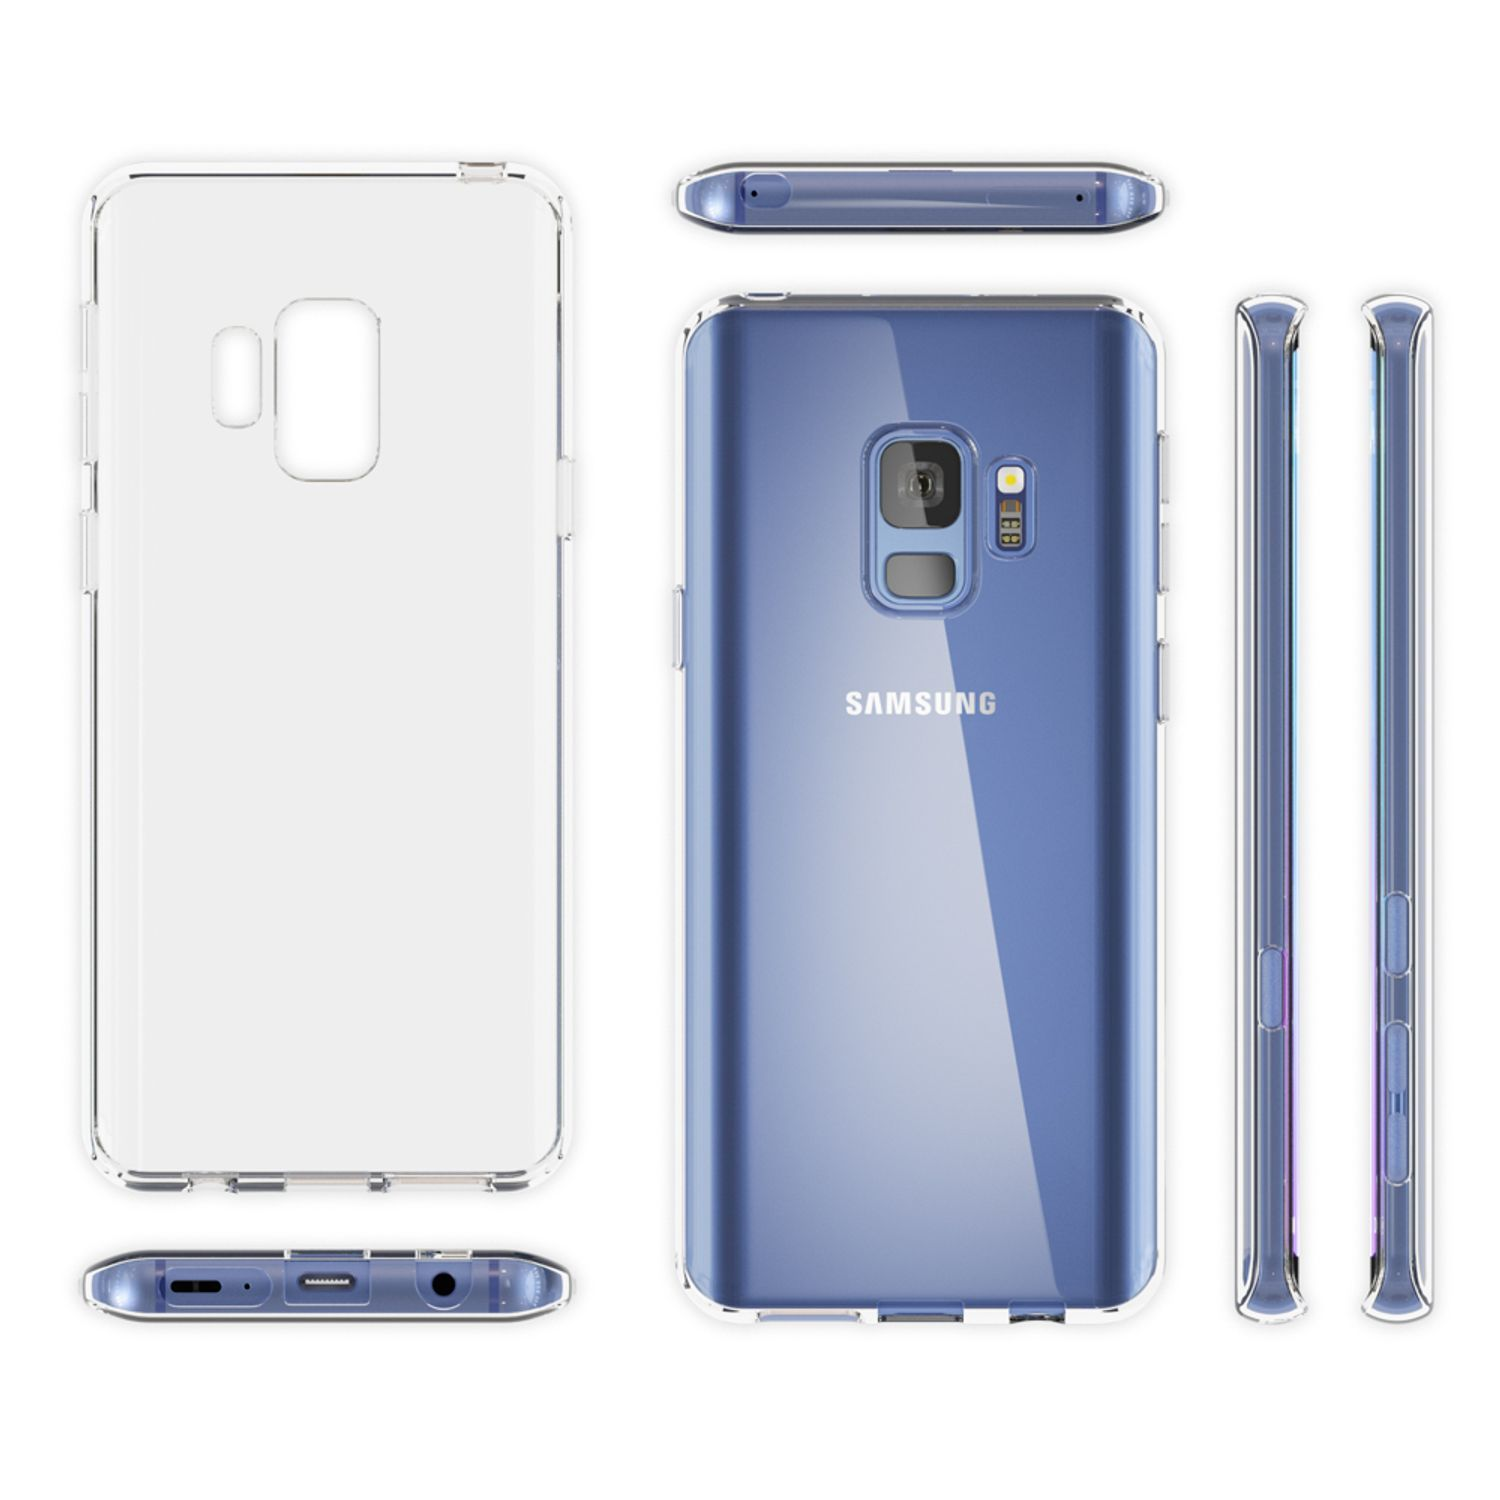 NALIA Motiv Silikon Mehrfarbig Galaxy Samsung, Hülle, S9, Backcover